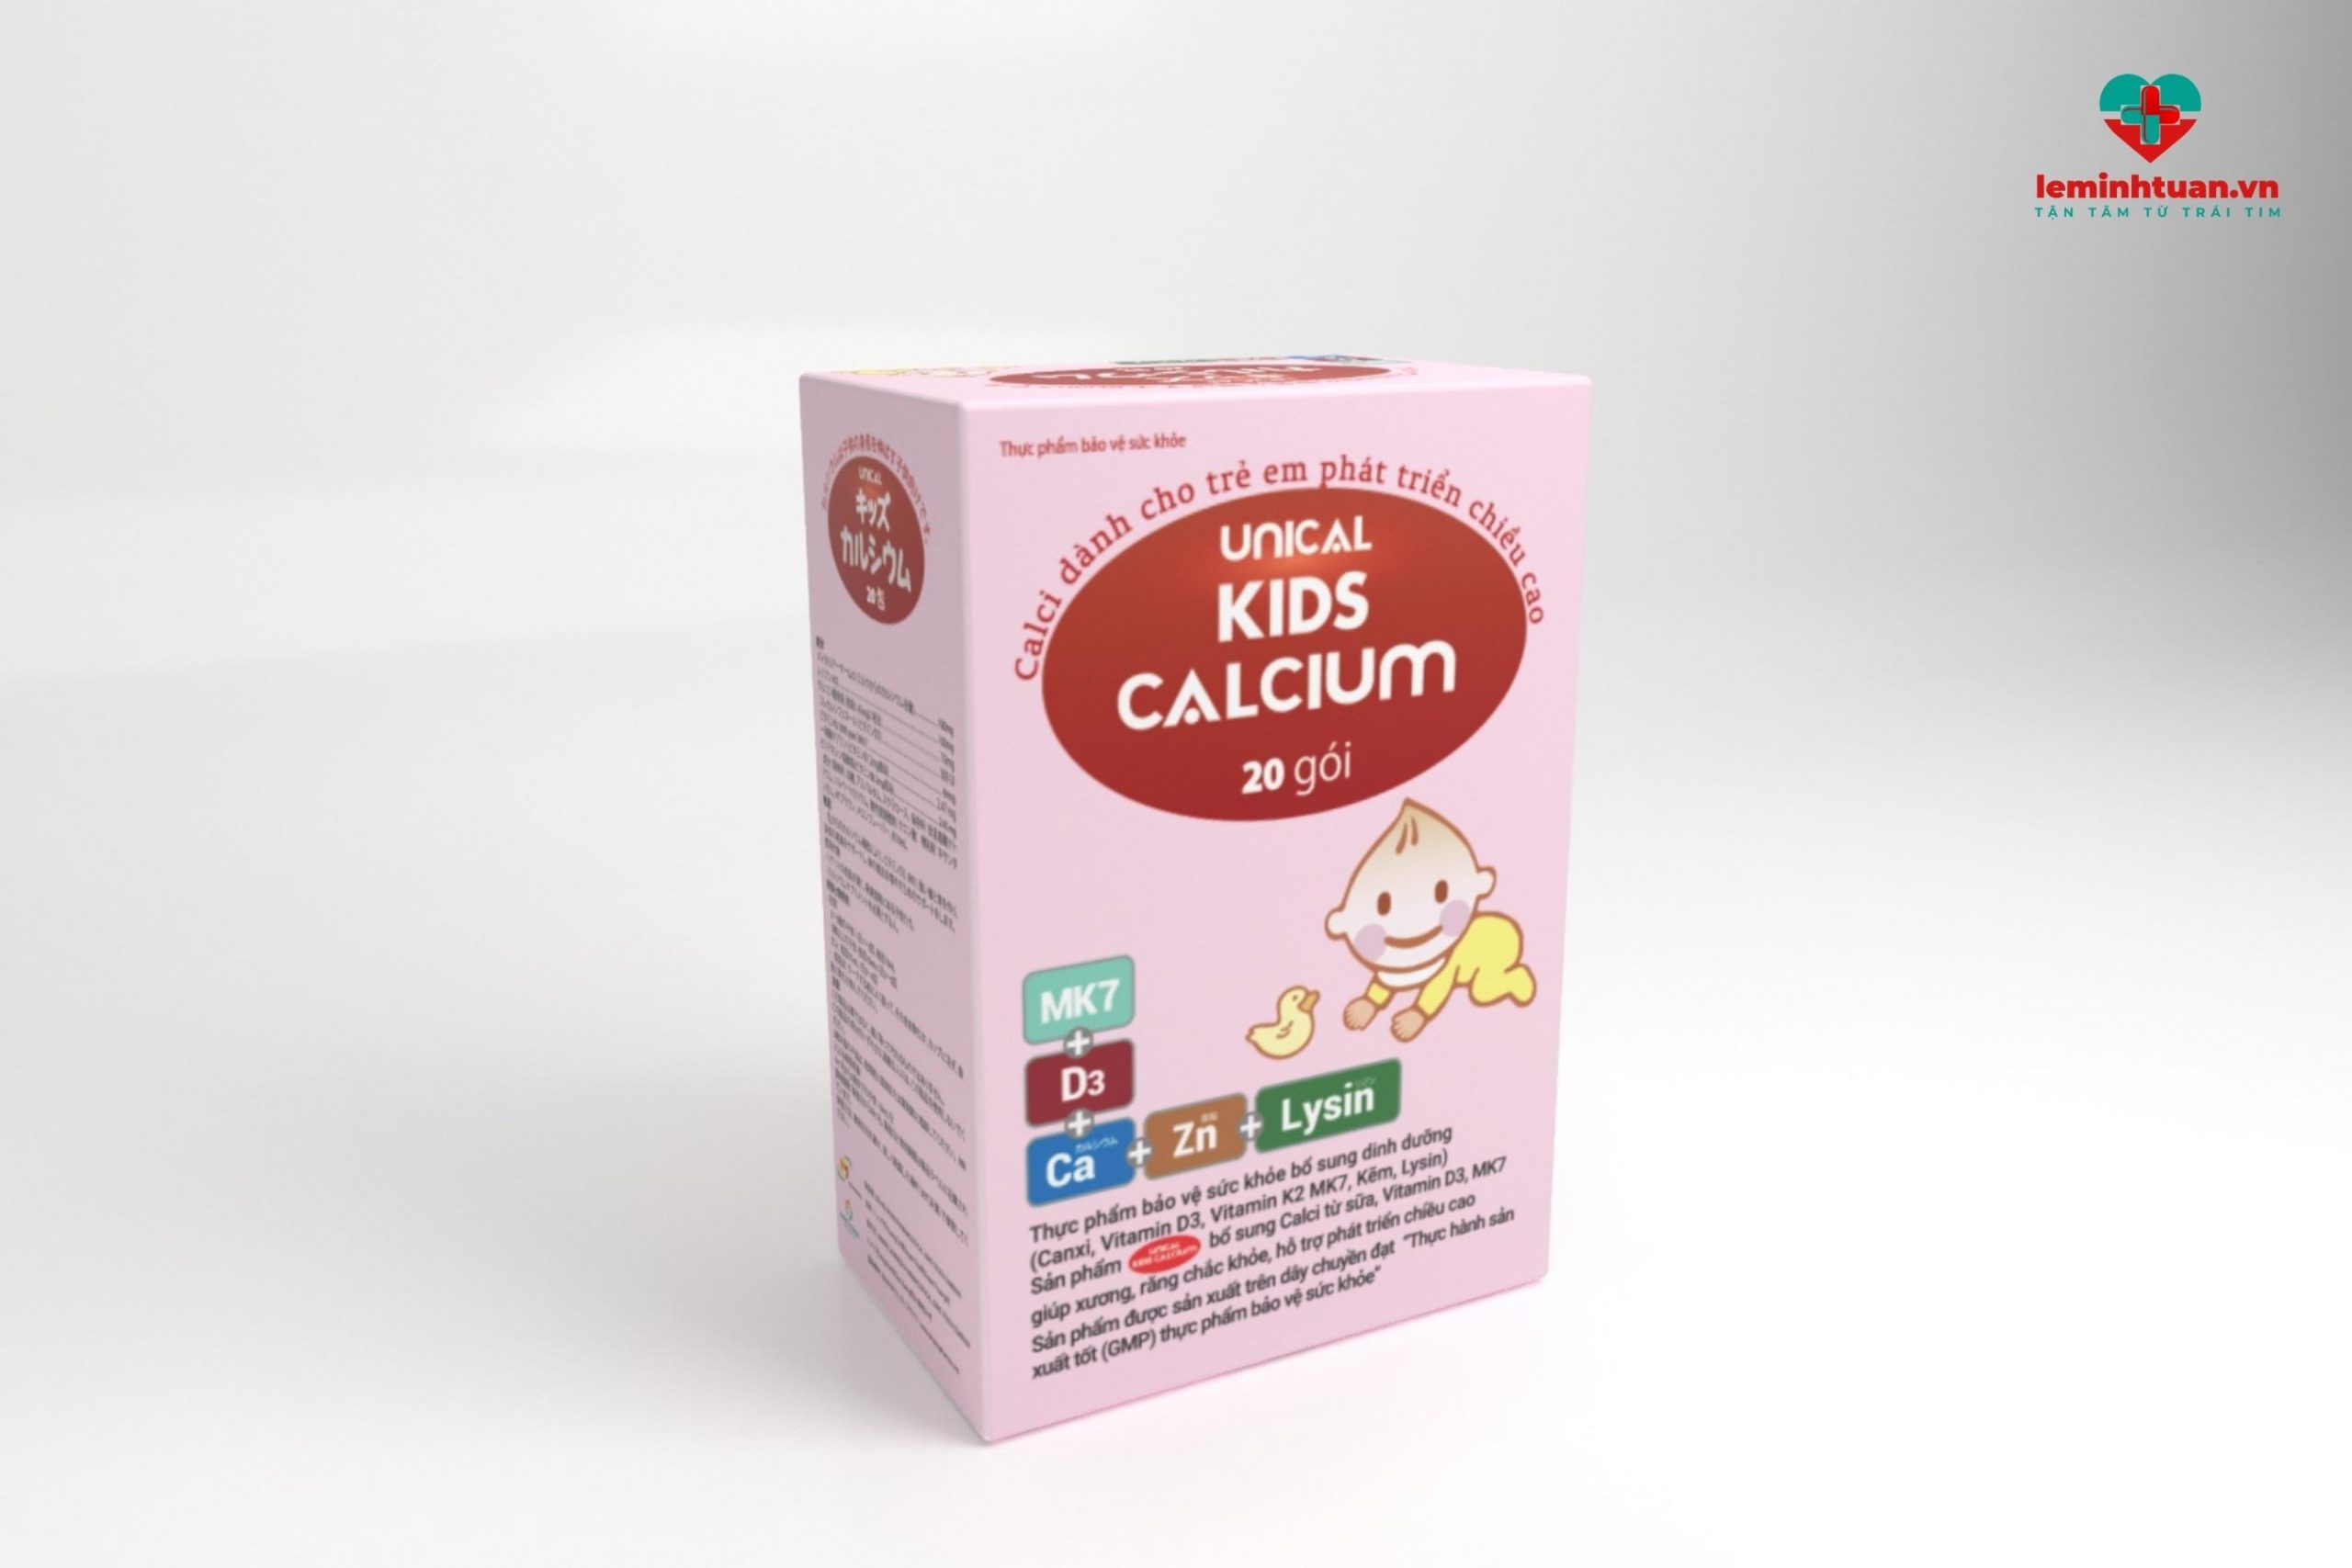 Công dụng của Unical Kids Calcium là 